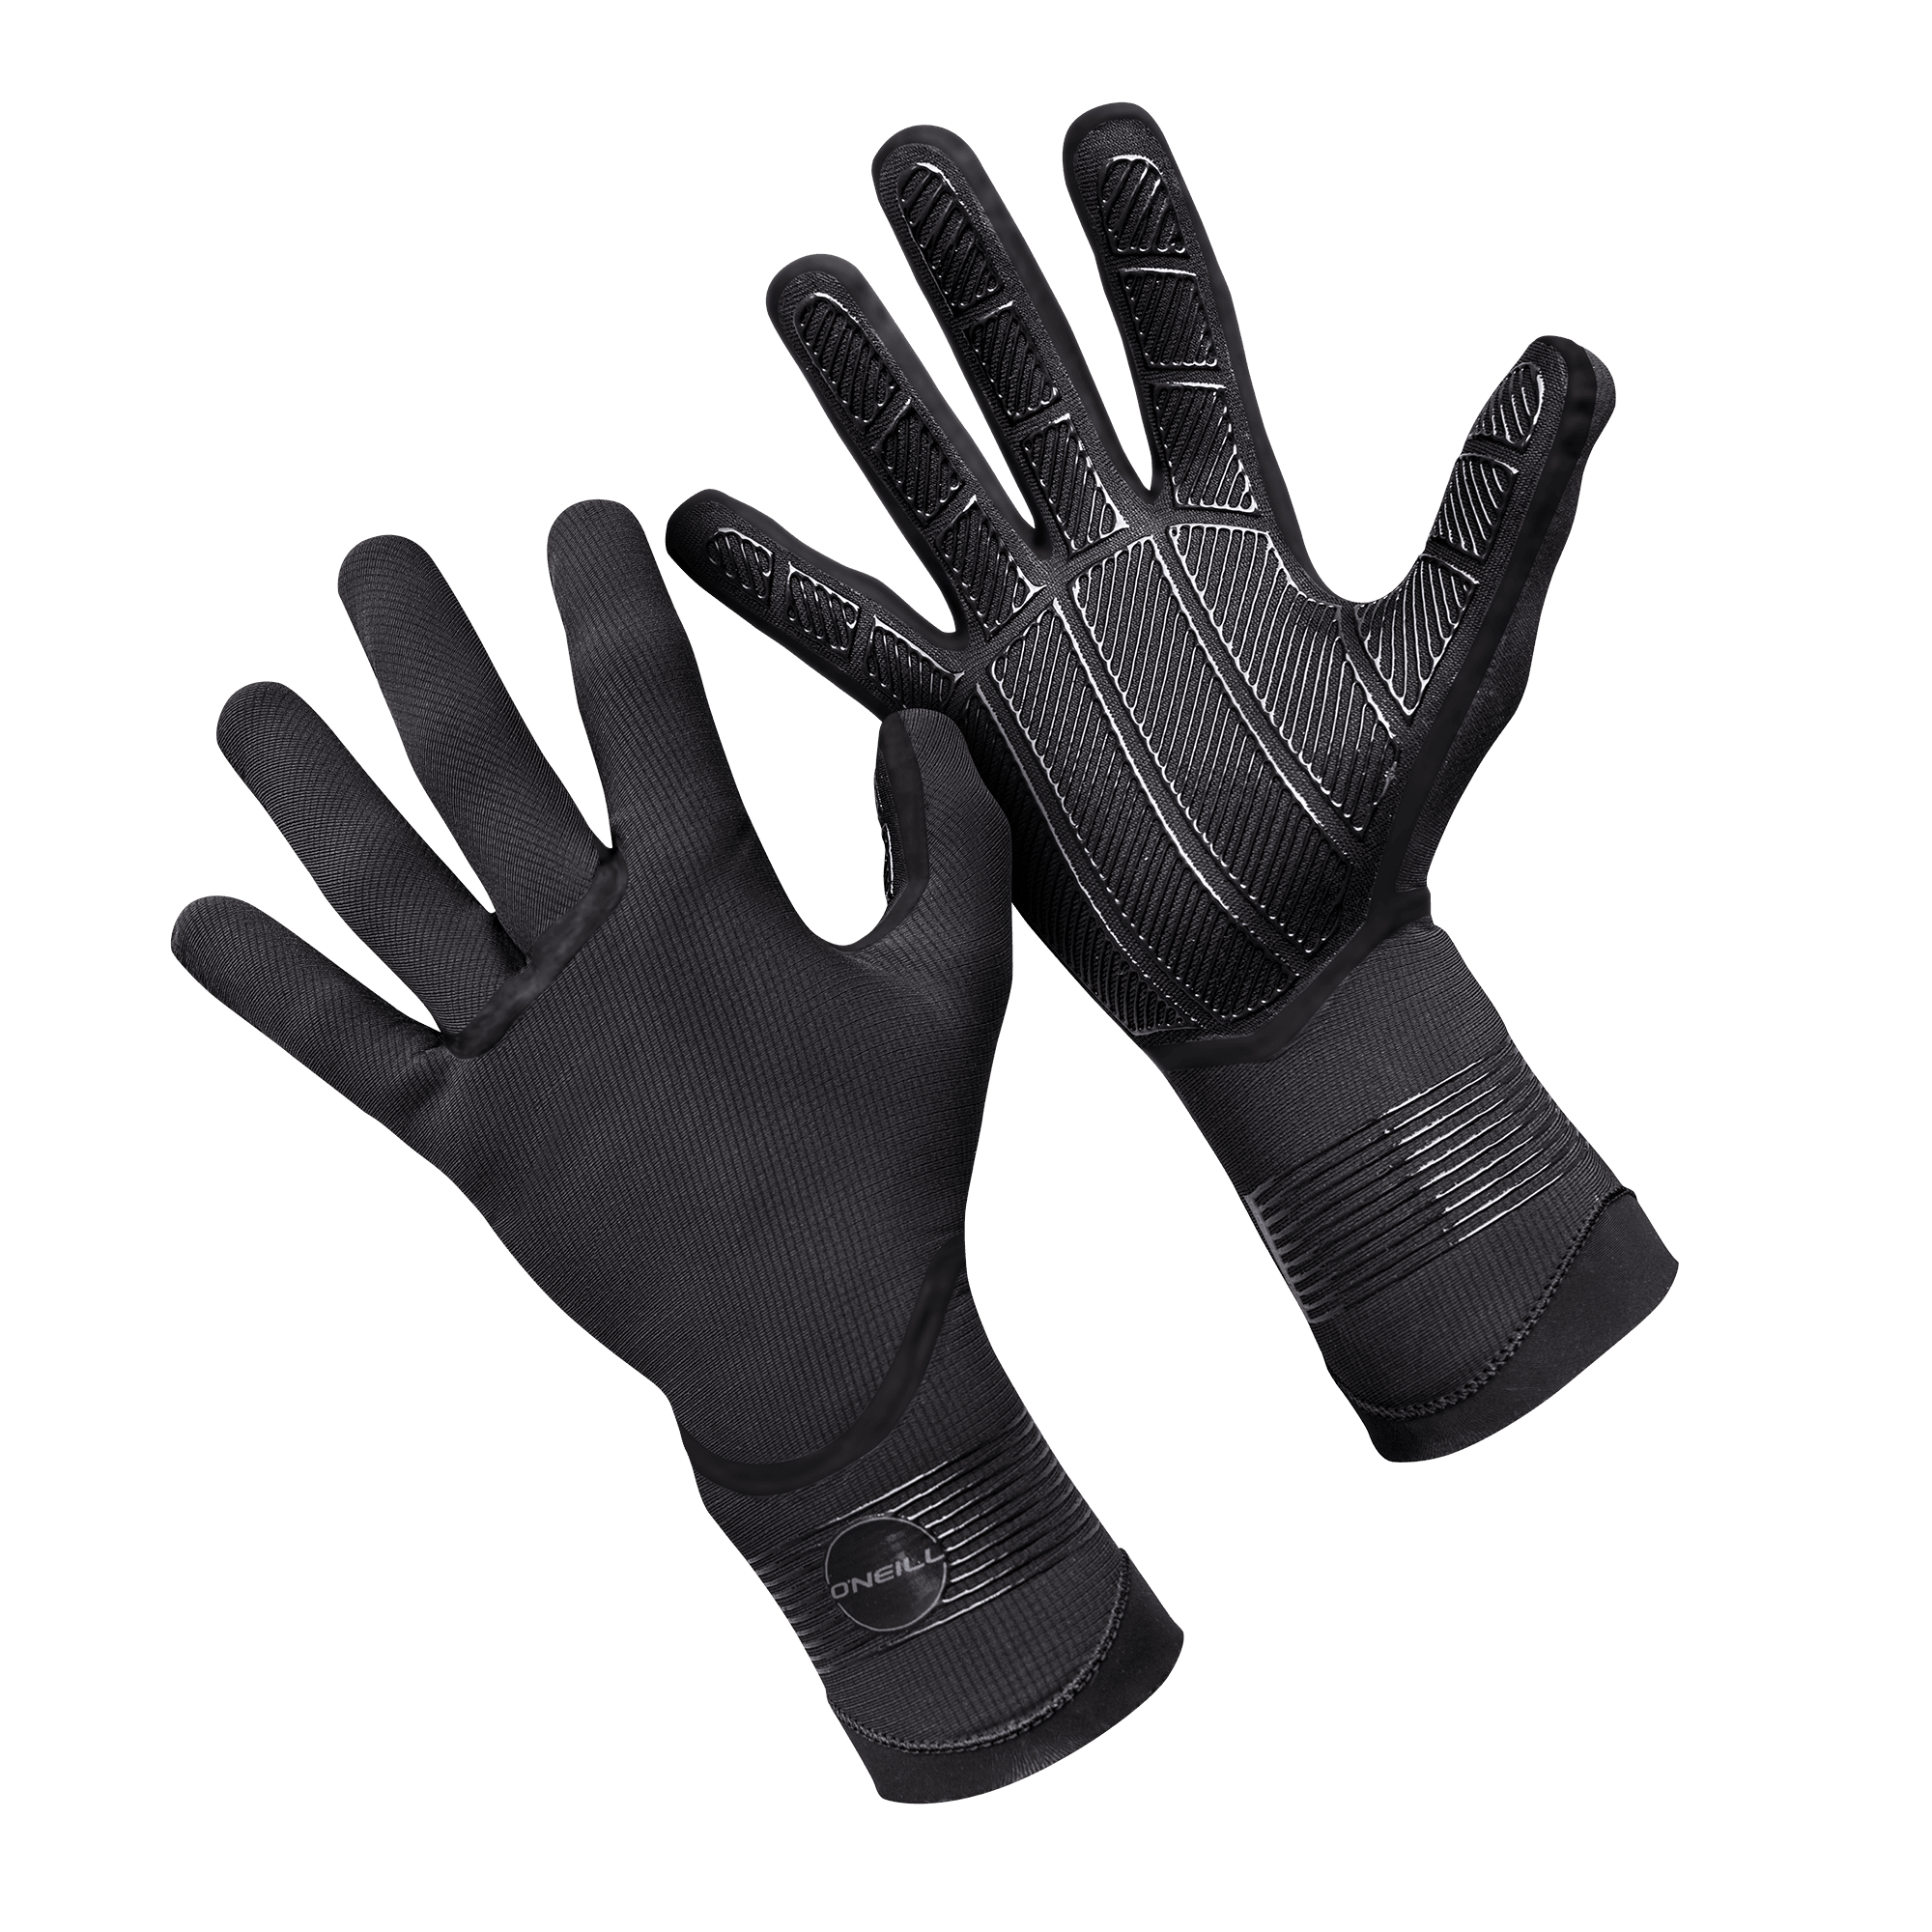 O'Neill Psycho Tech 1.5mm Gloves